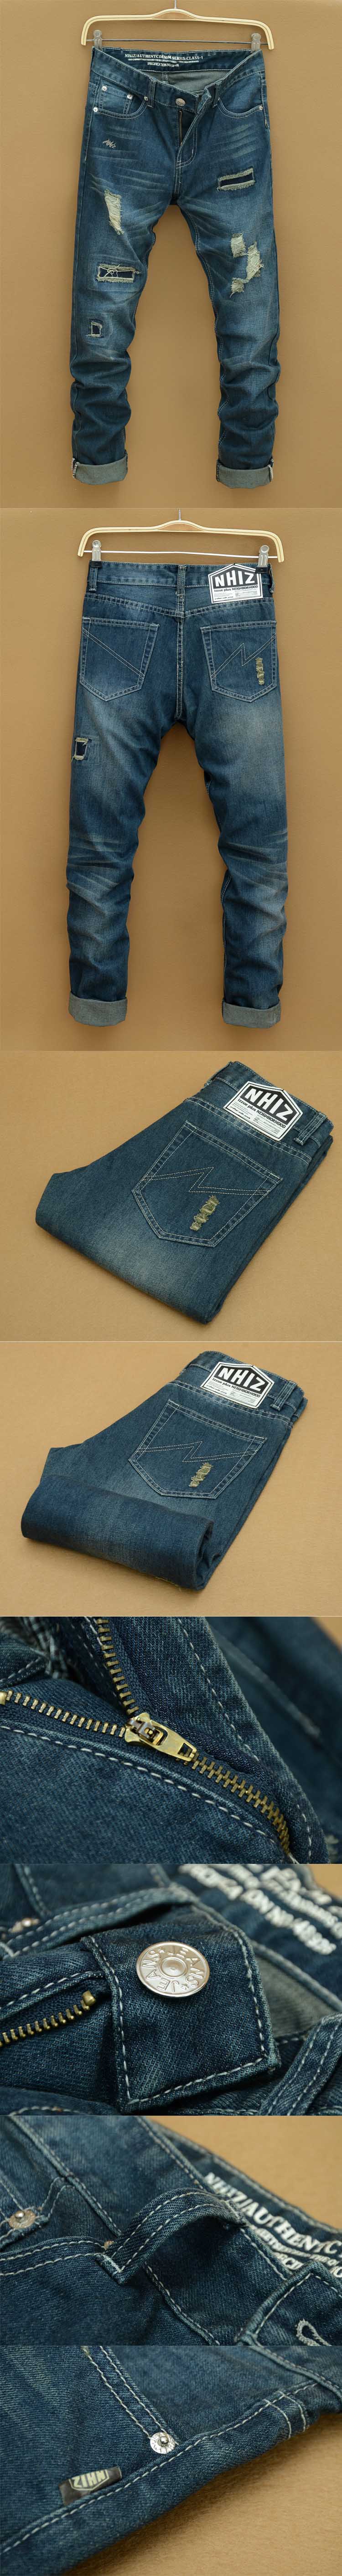 jual celana jeans pria model robek terbaru, terbuat dari bahan berkualitas yang nyaman dipakai, temukan koleksi celana jeans pria model robek lain nya disini